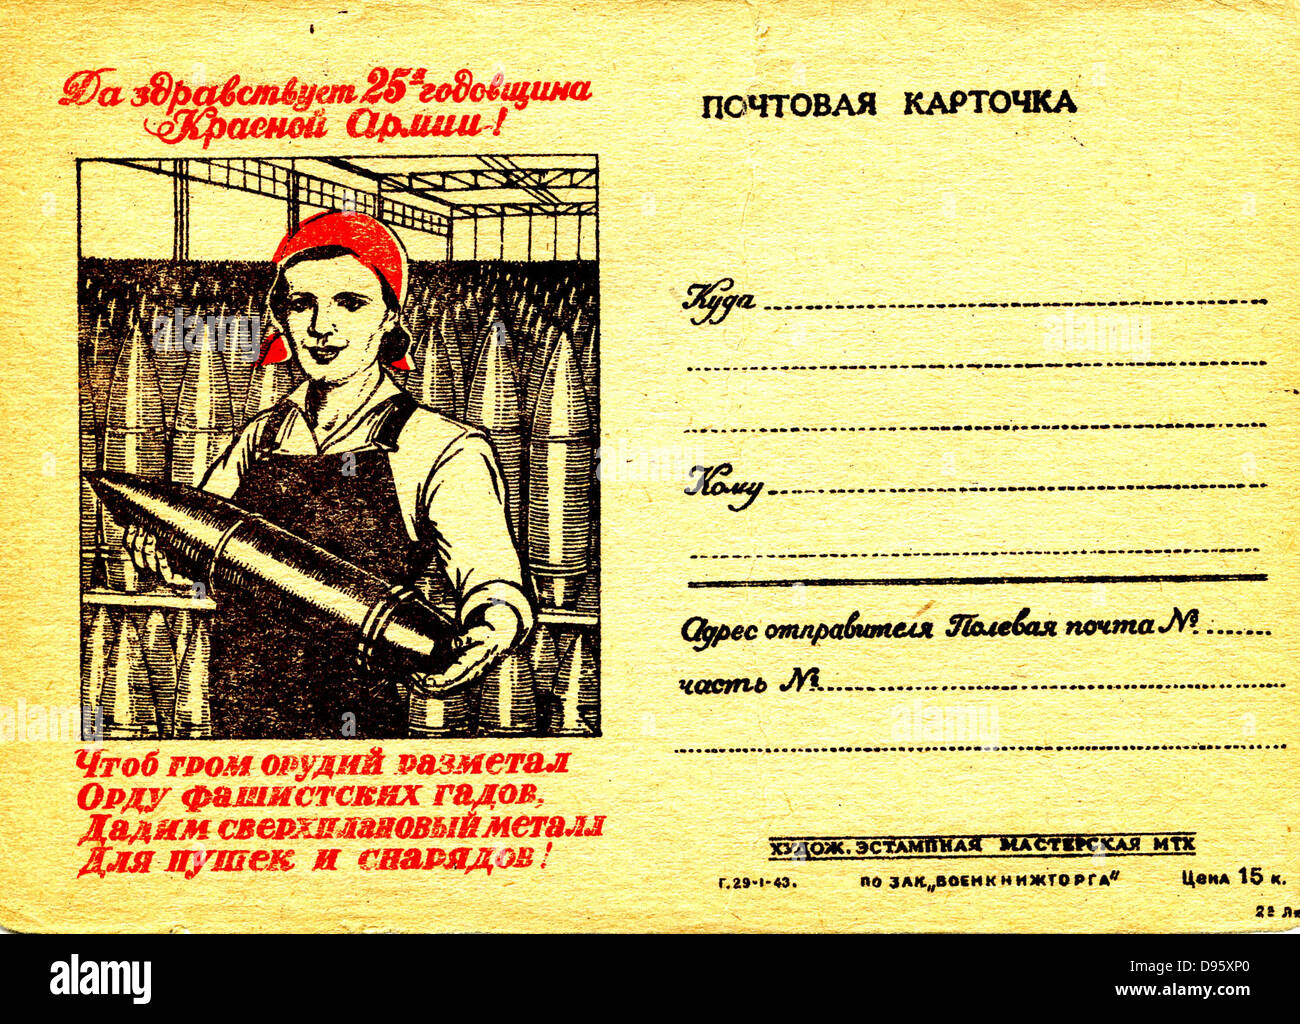 Russland Weltkrieg Arbeit Frauen Kommunismus Geschichte Historisches Archiv Archiv Fotos Und